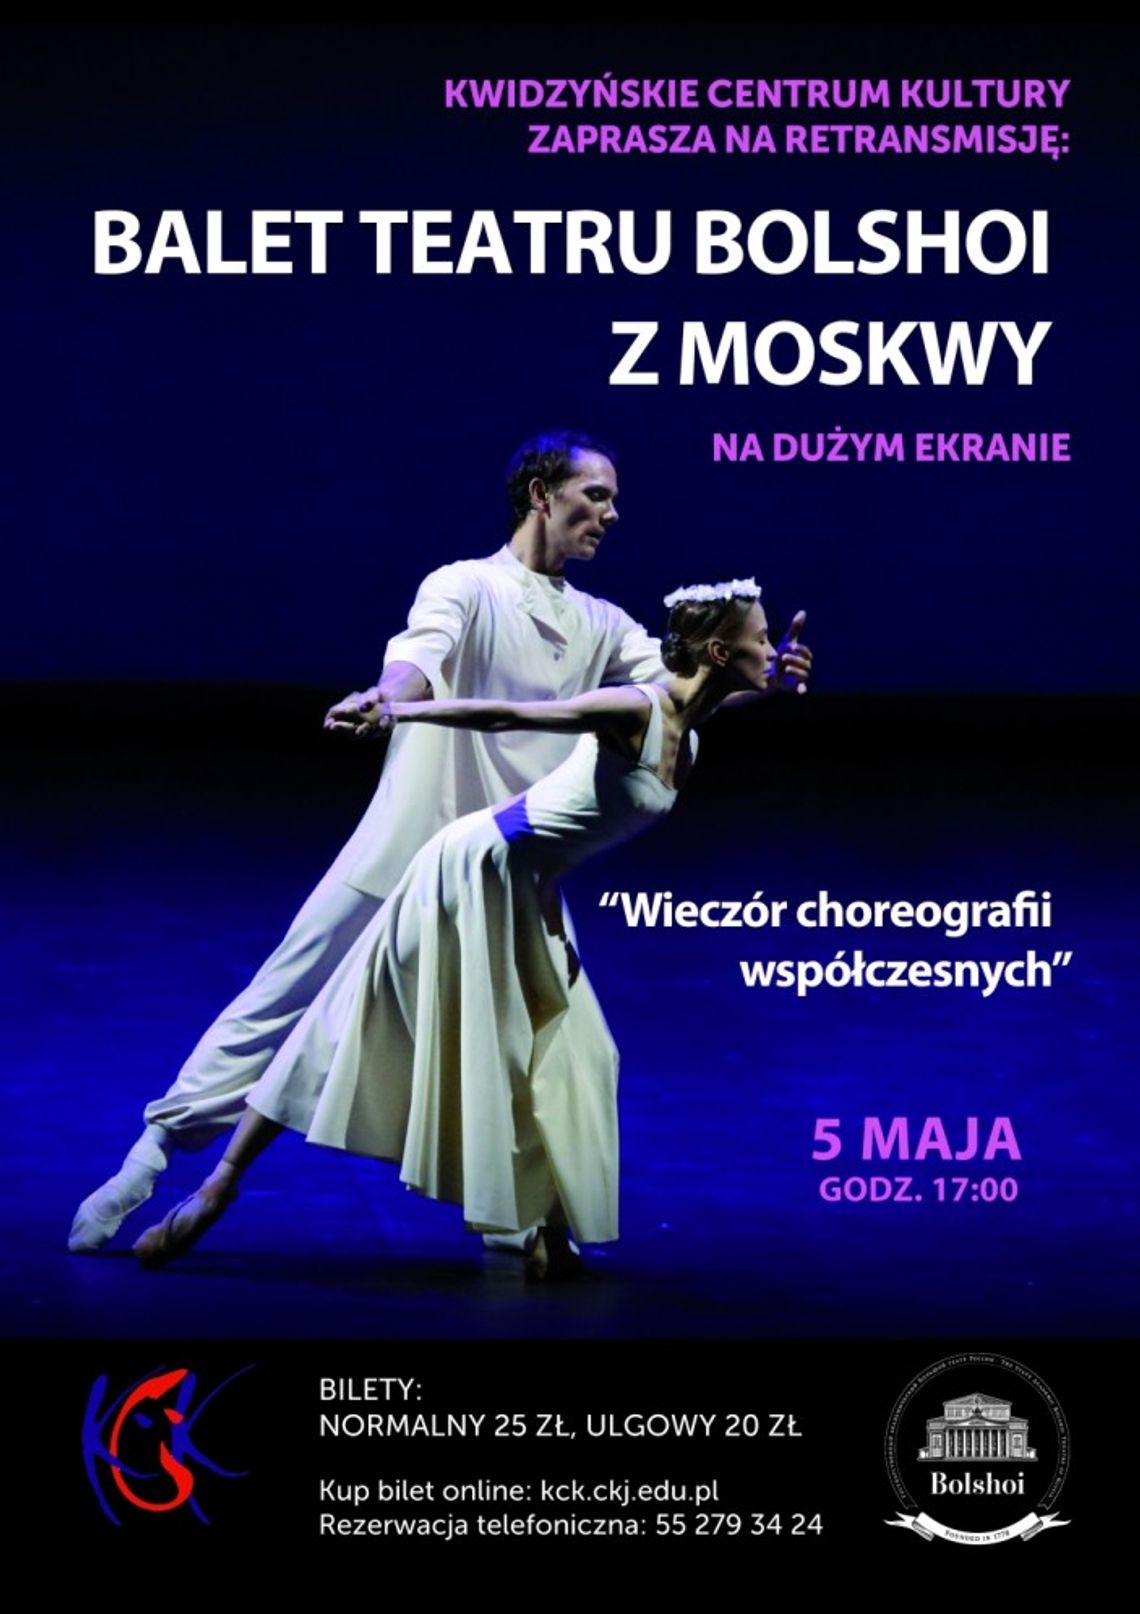 Retransmisja balet teatru Bolshoi.